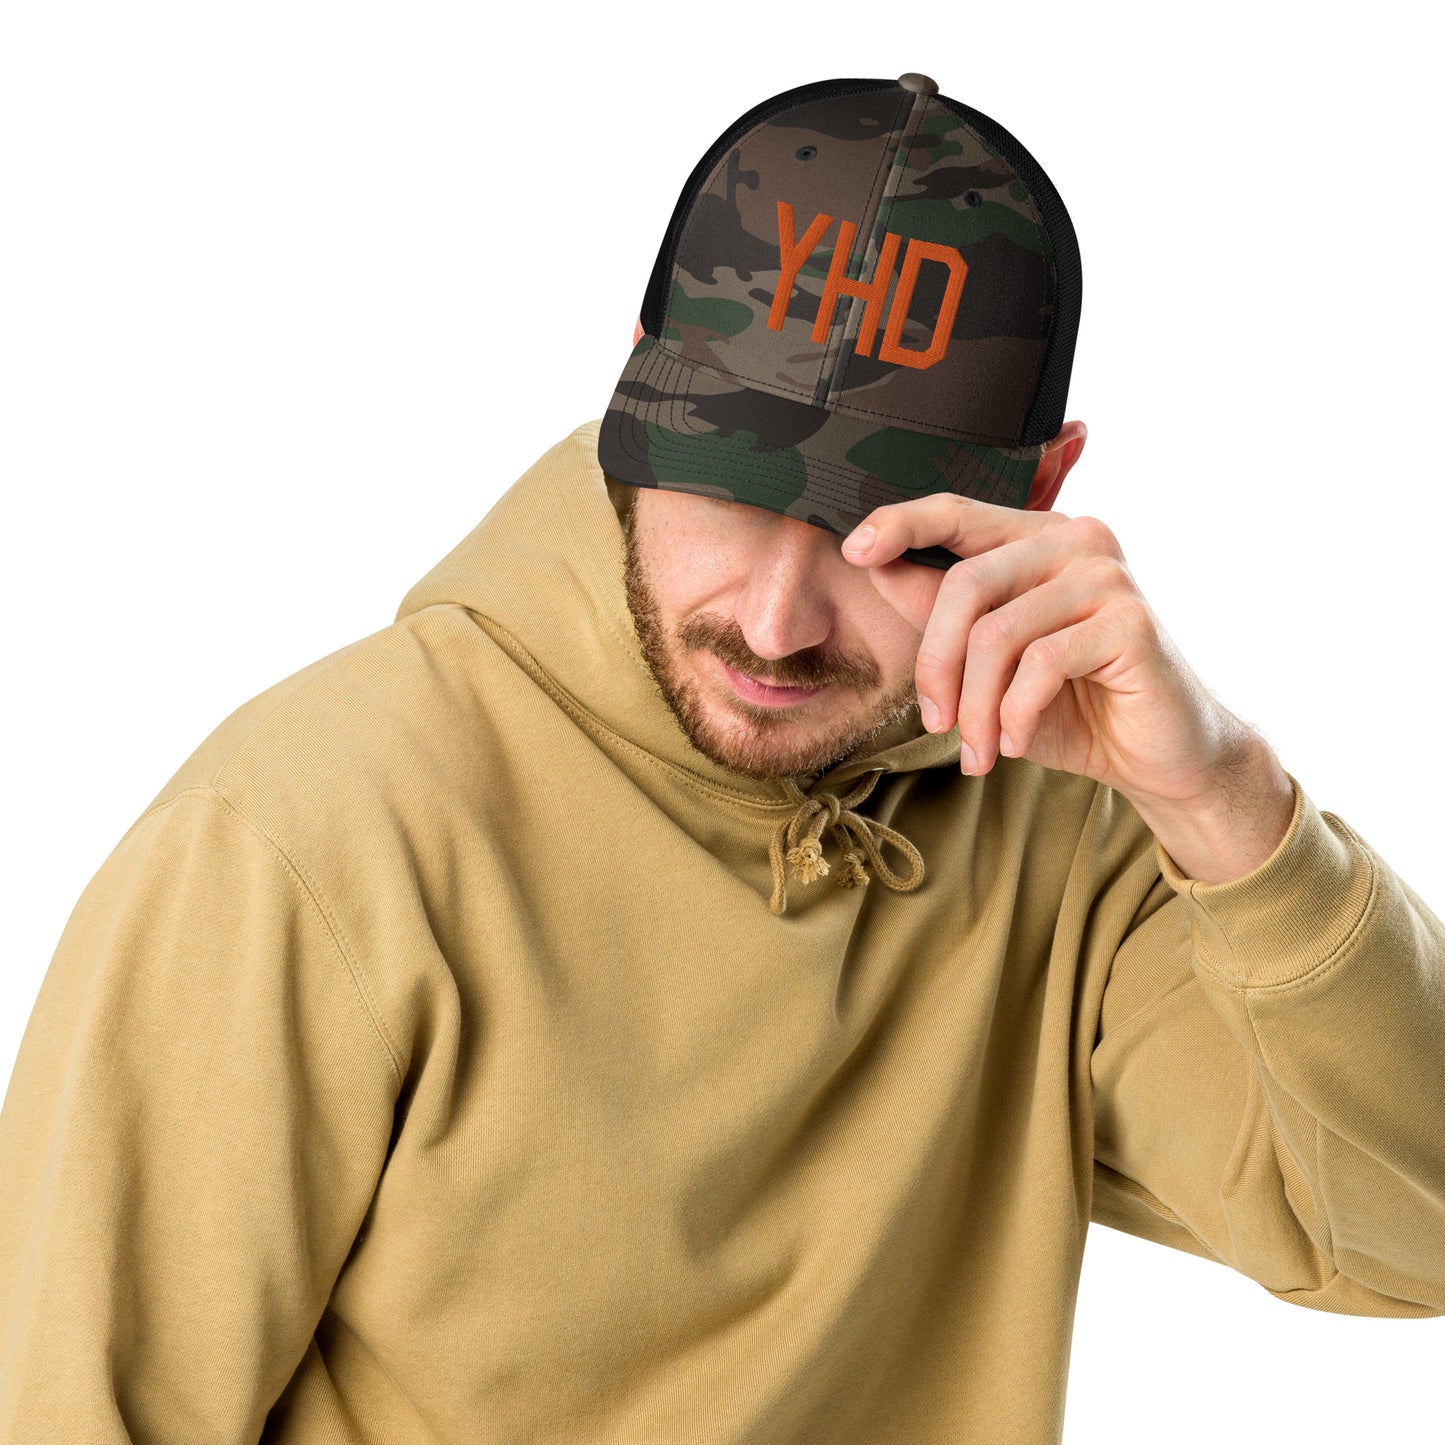 Airport Code Camouflage Trucker Hat - Orange • YHD Dryden • YHM Designs - Image 05